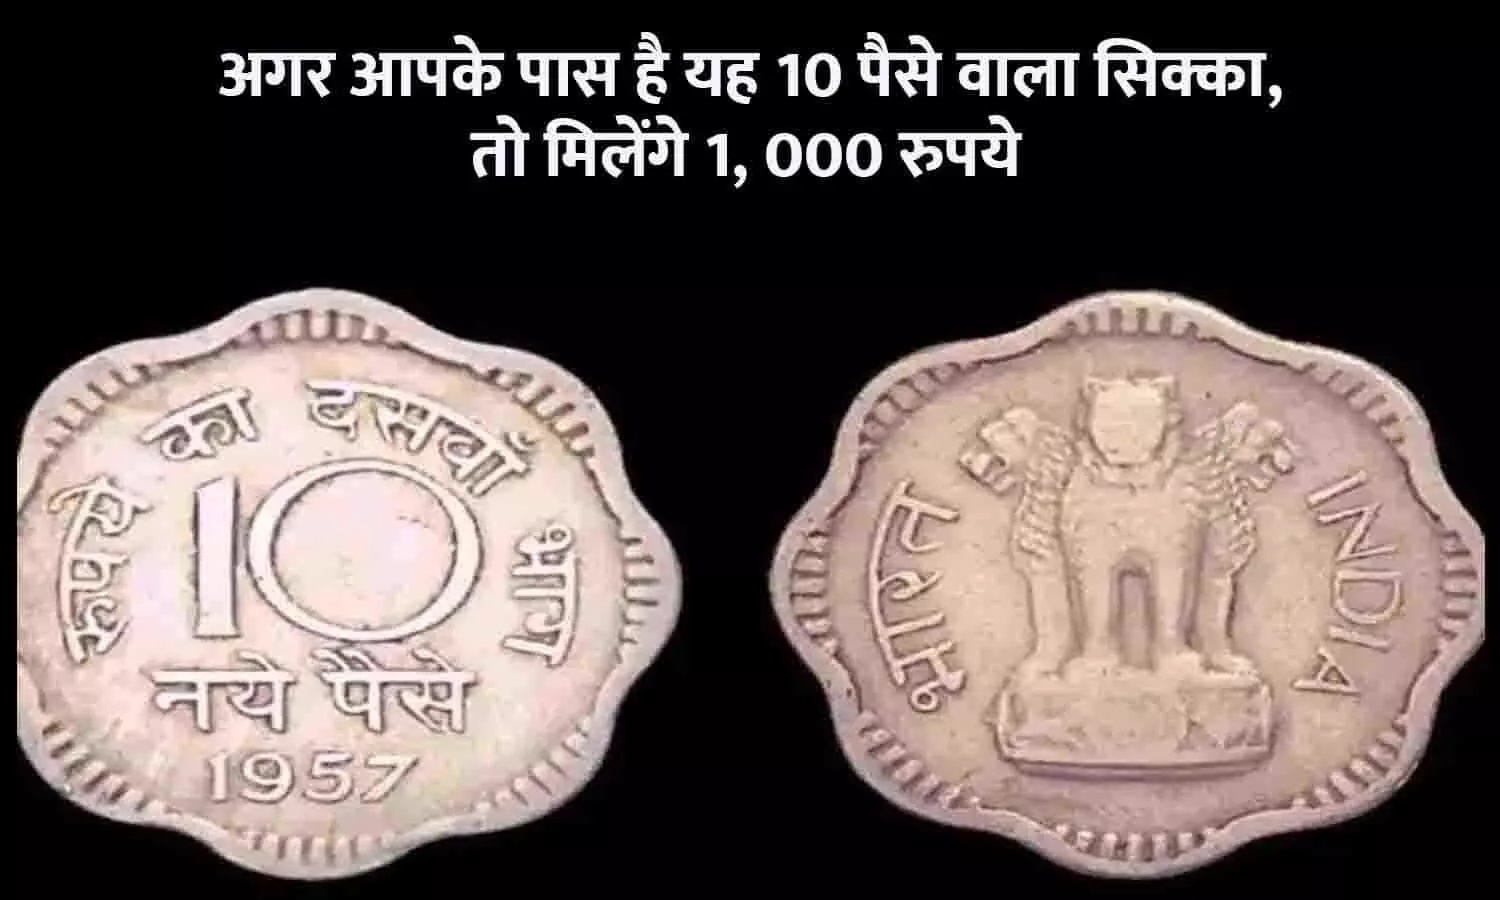 Sell Coin 2023: अगर आपके पास है यह 10 पैसे वाला सिक्का, तो इस Online Website में बेचने पर मिलेंगे 1,000 रुपये, ऐसा मौका न गंवाएं